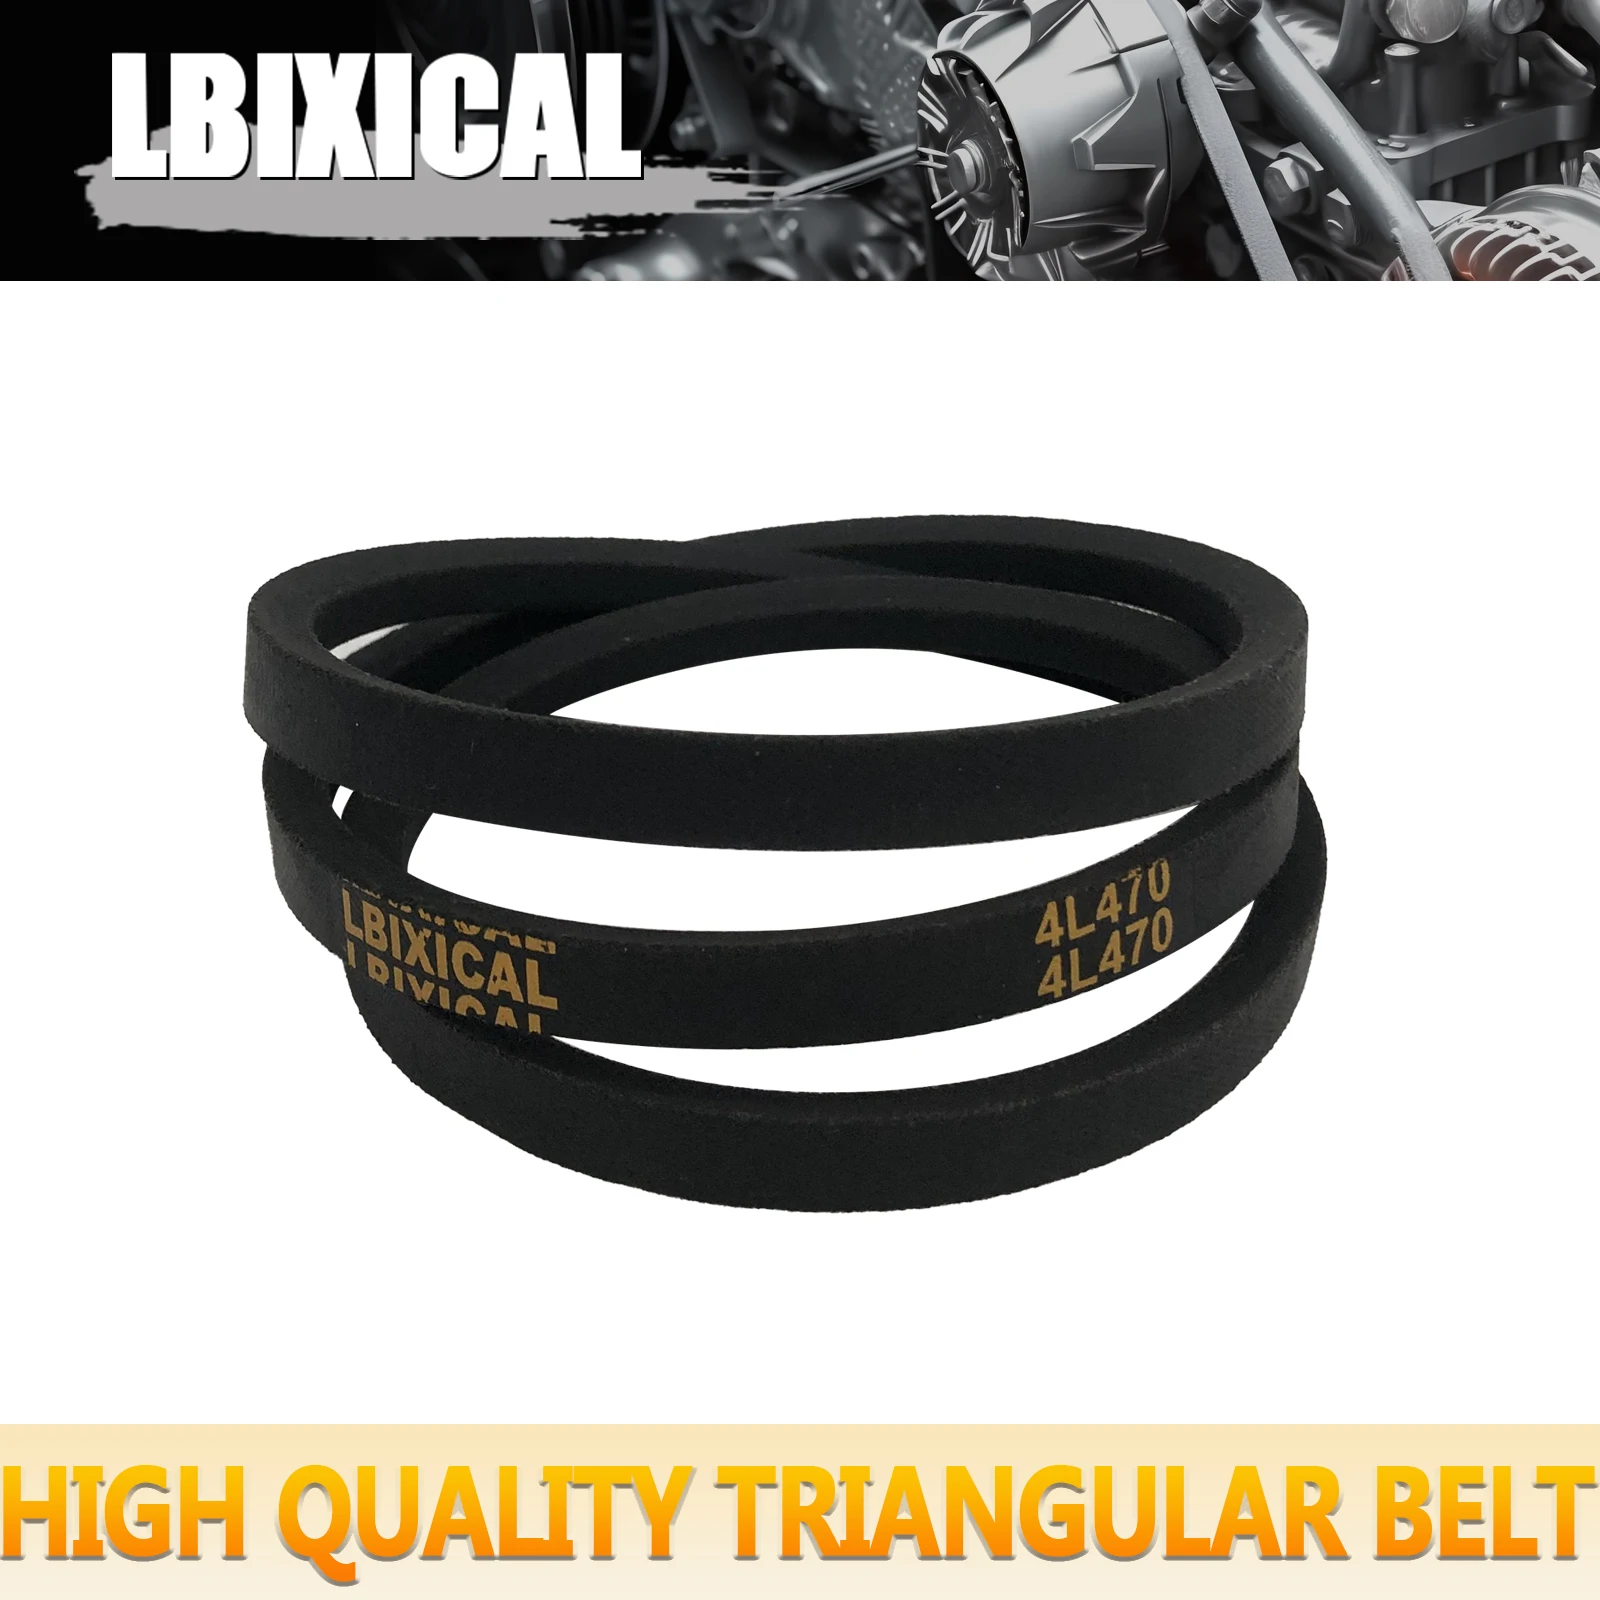 

Ремень электропередачи LBIXICAL A45 или 4L470 OC, классический резиновый V-образный ремень, наружная окружность 47 дюймов